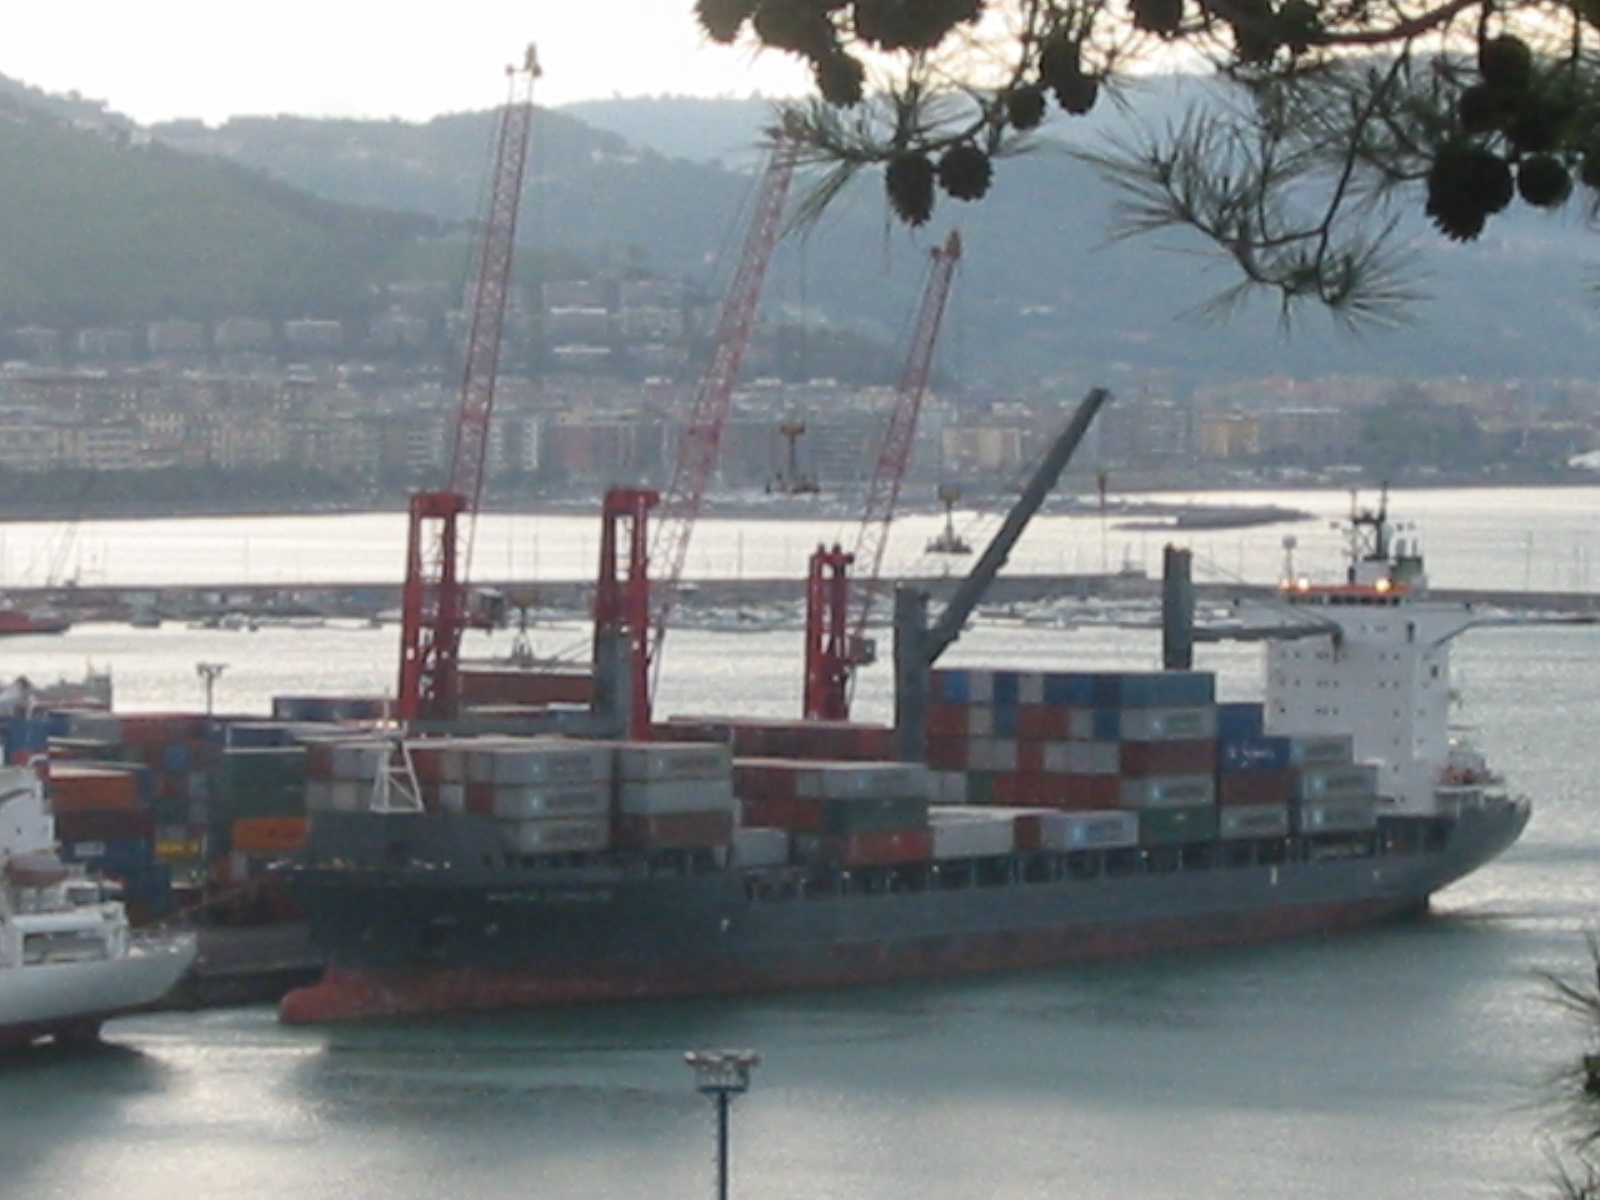 Trasporto container: dal 1 febbraio aumento del 10% sulle tariffe